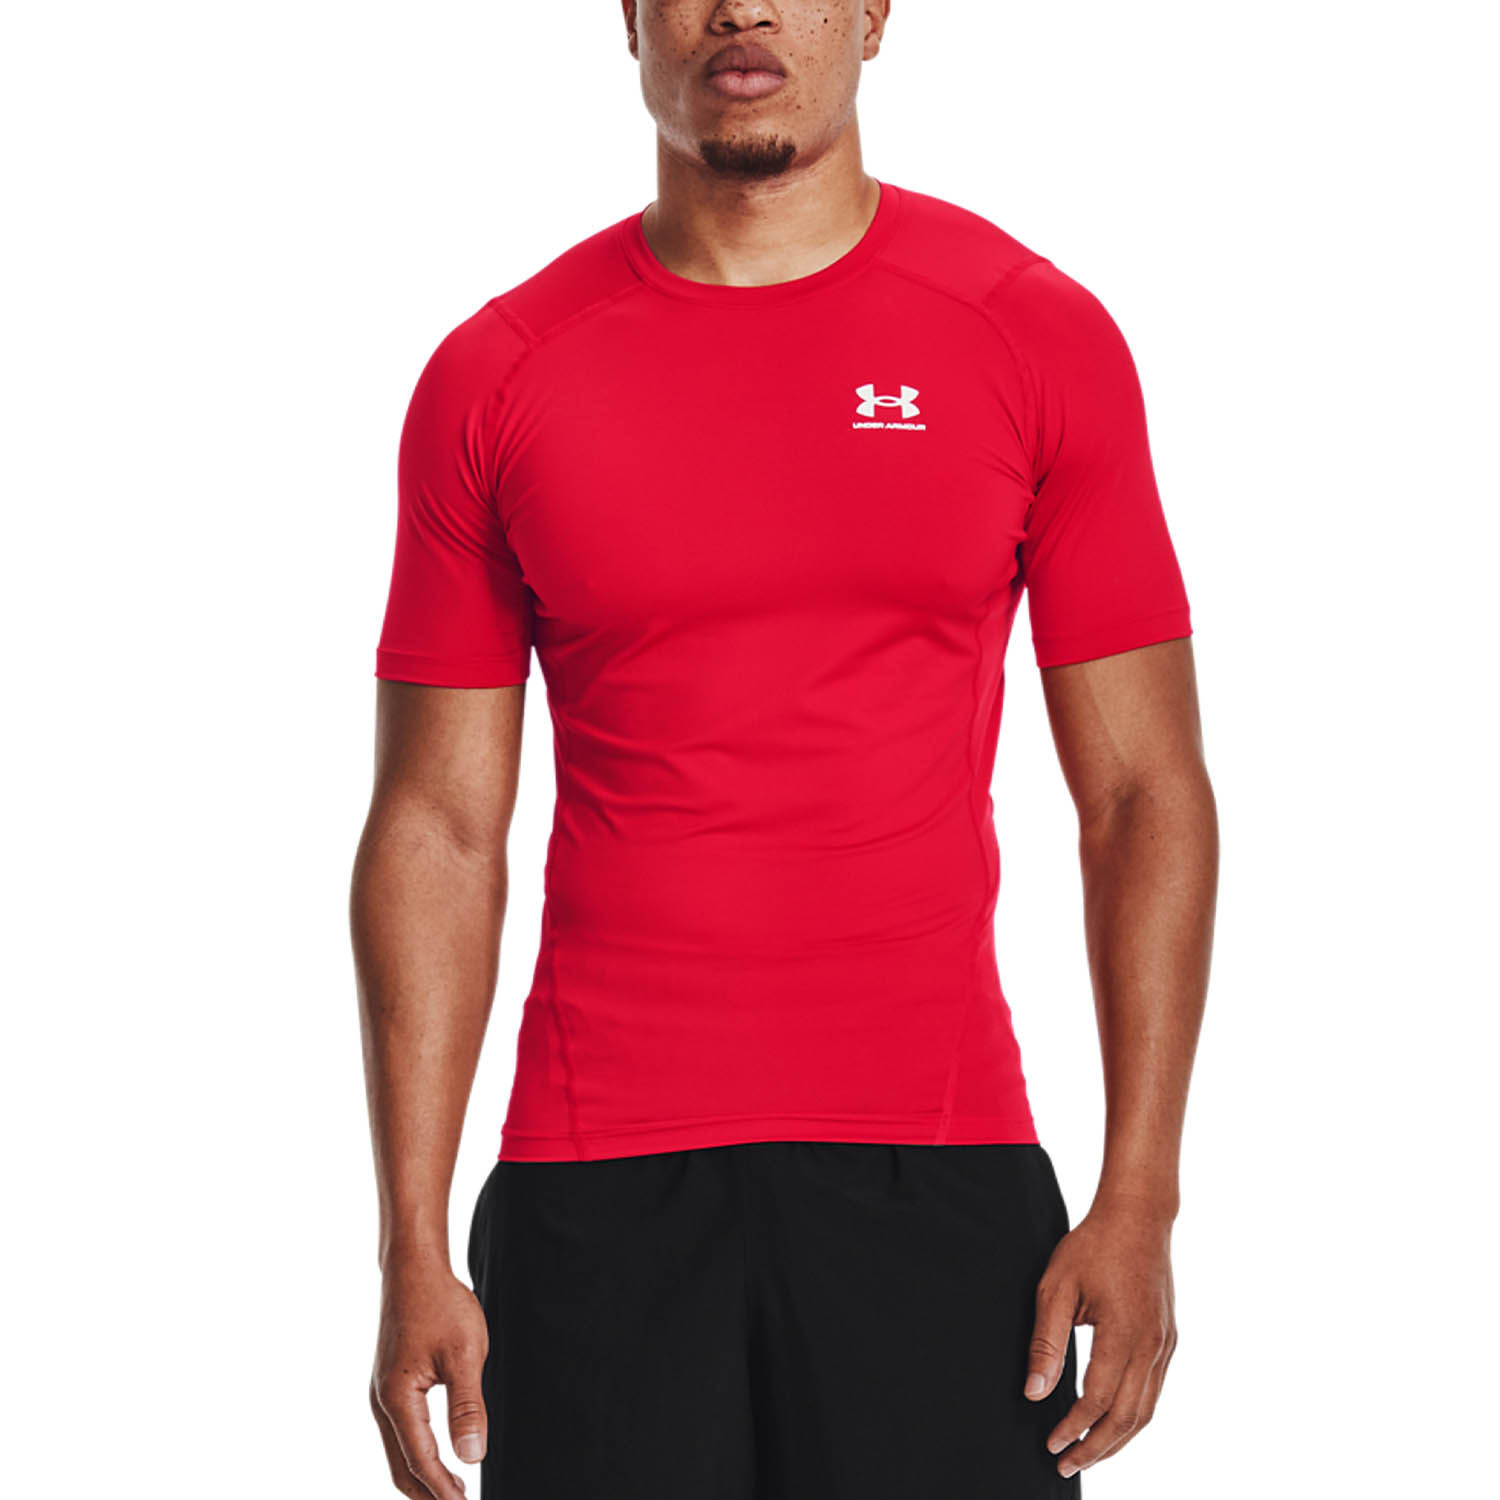 Under Armour HeatGear Men's Training T-Shirt - Red